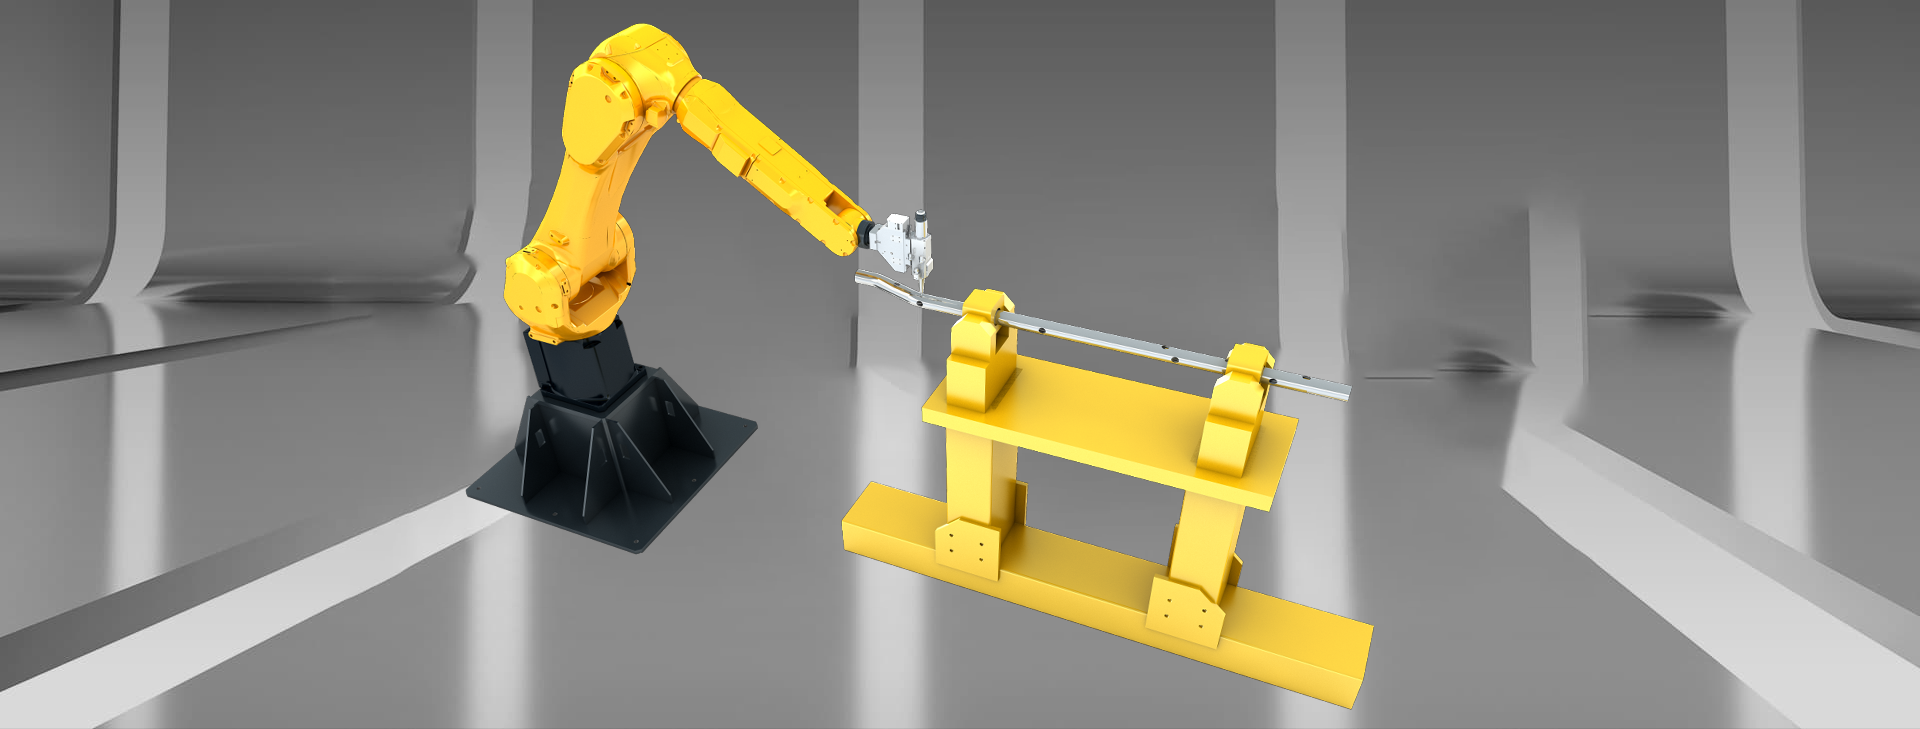 Máquina de corte a laser robô 3D com tipo de suporte